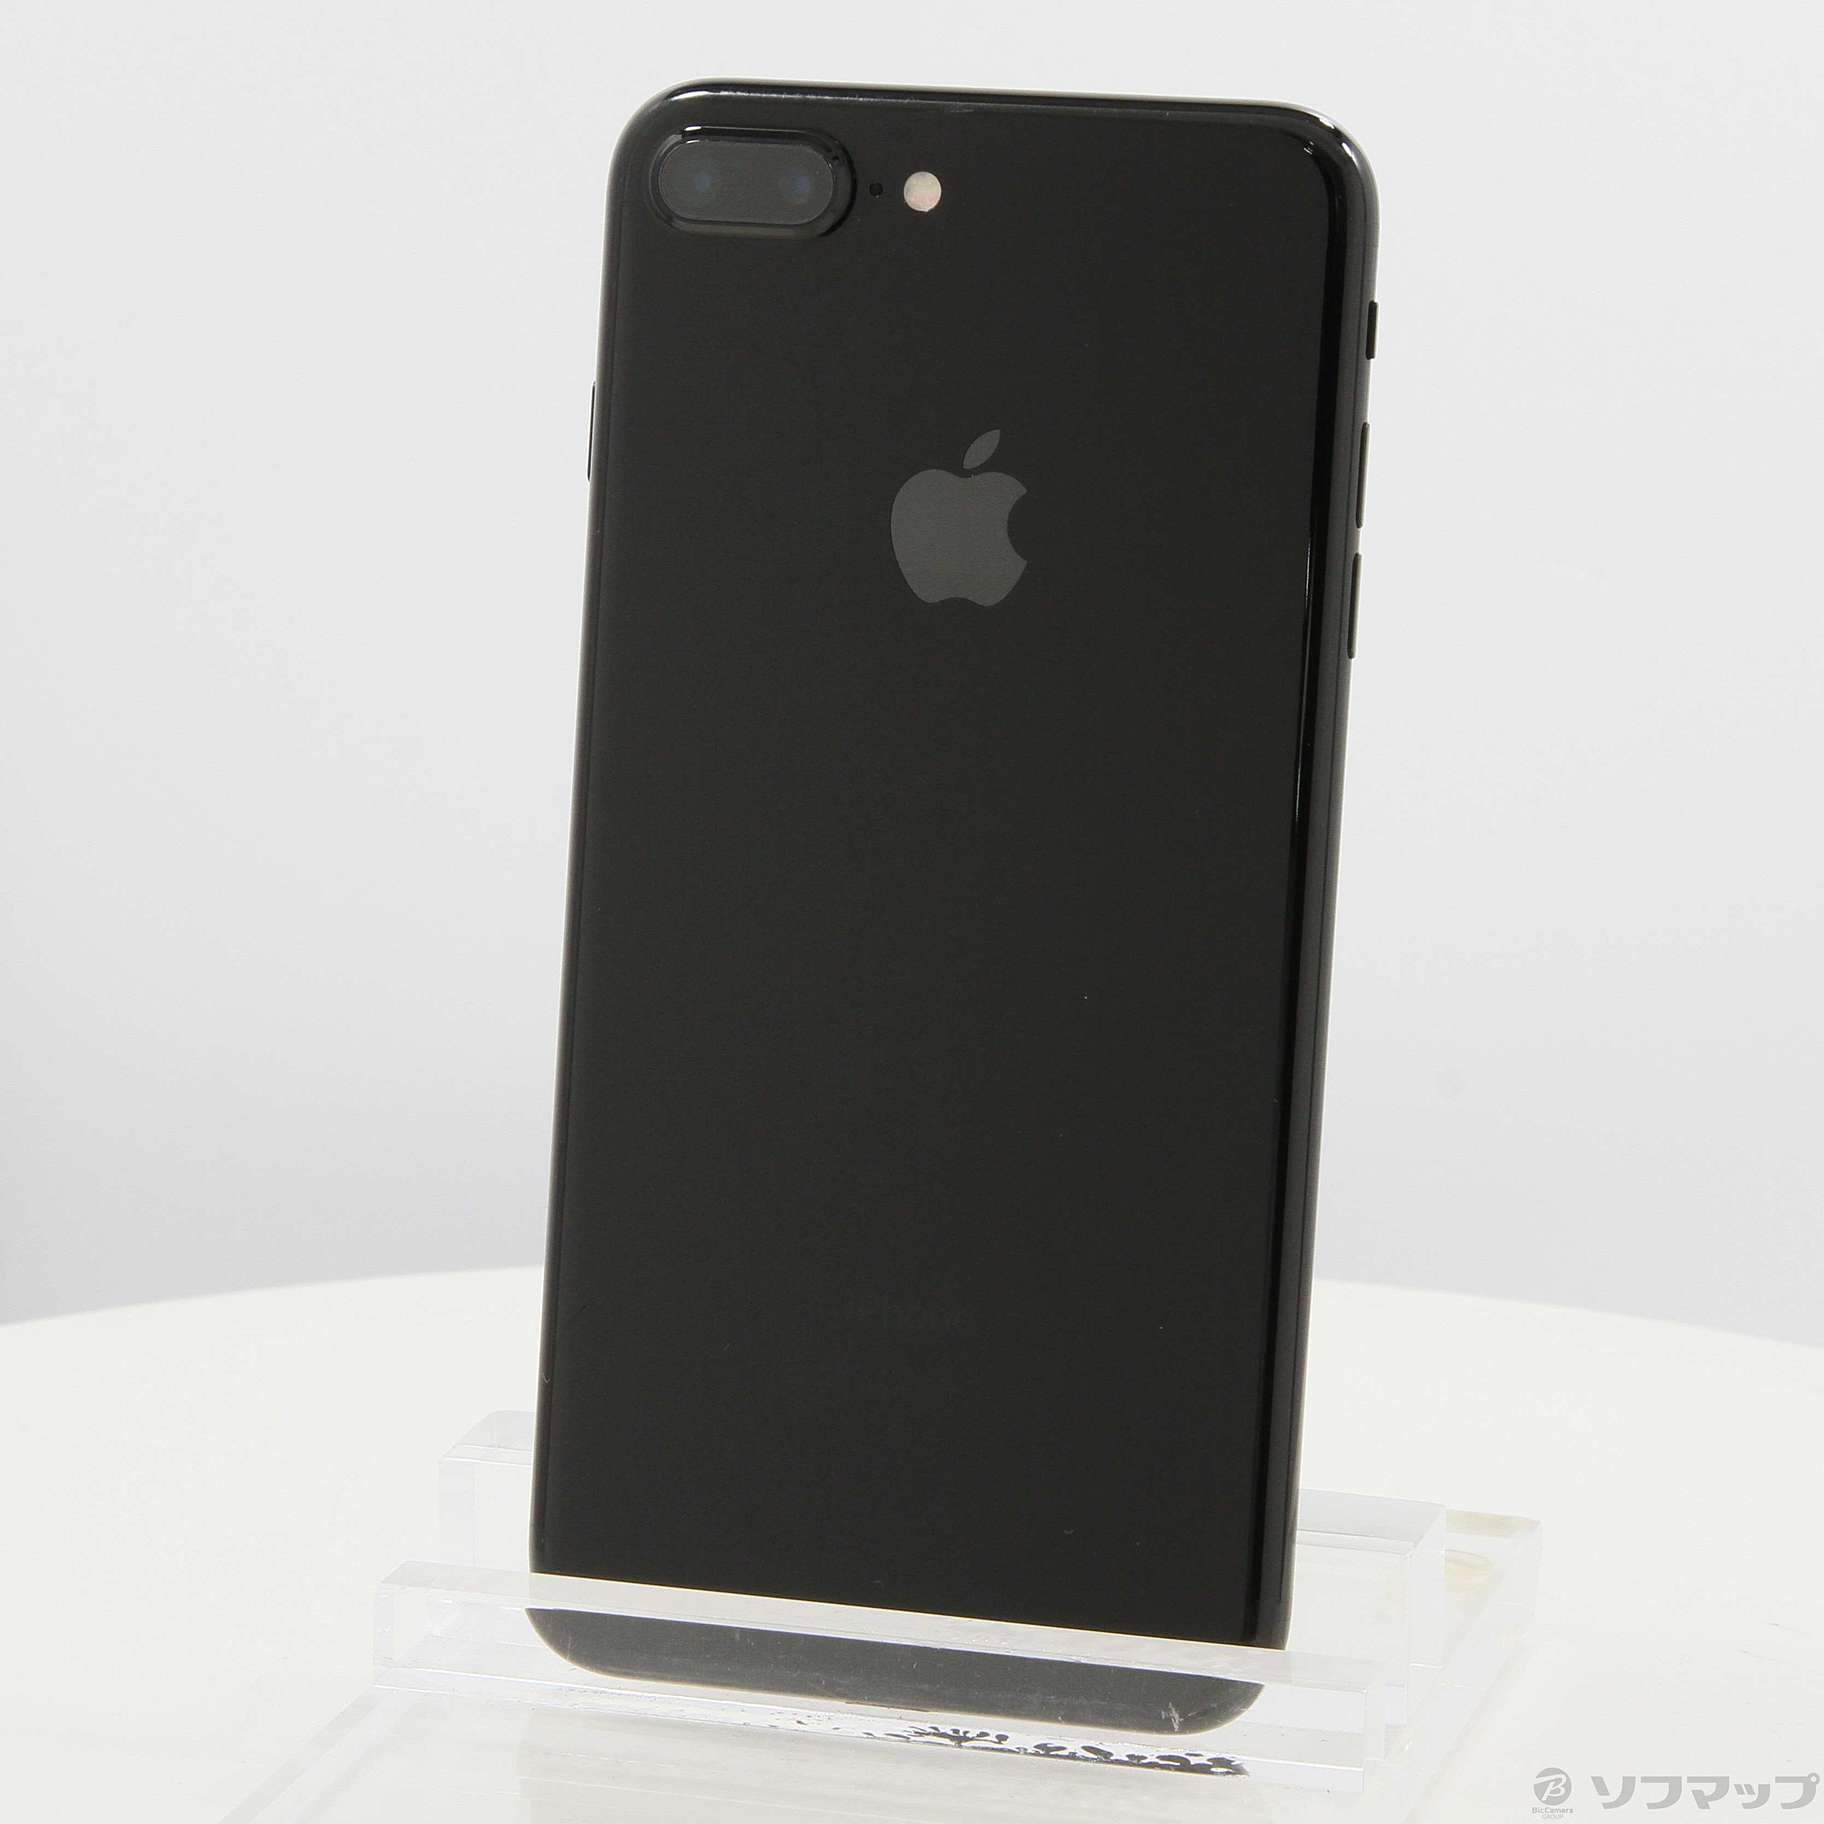 iPhone7 ブラック 128GB - スマートフォン本体